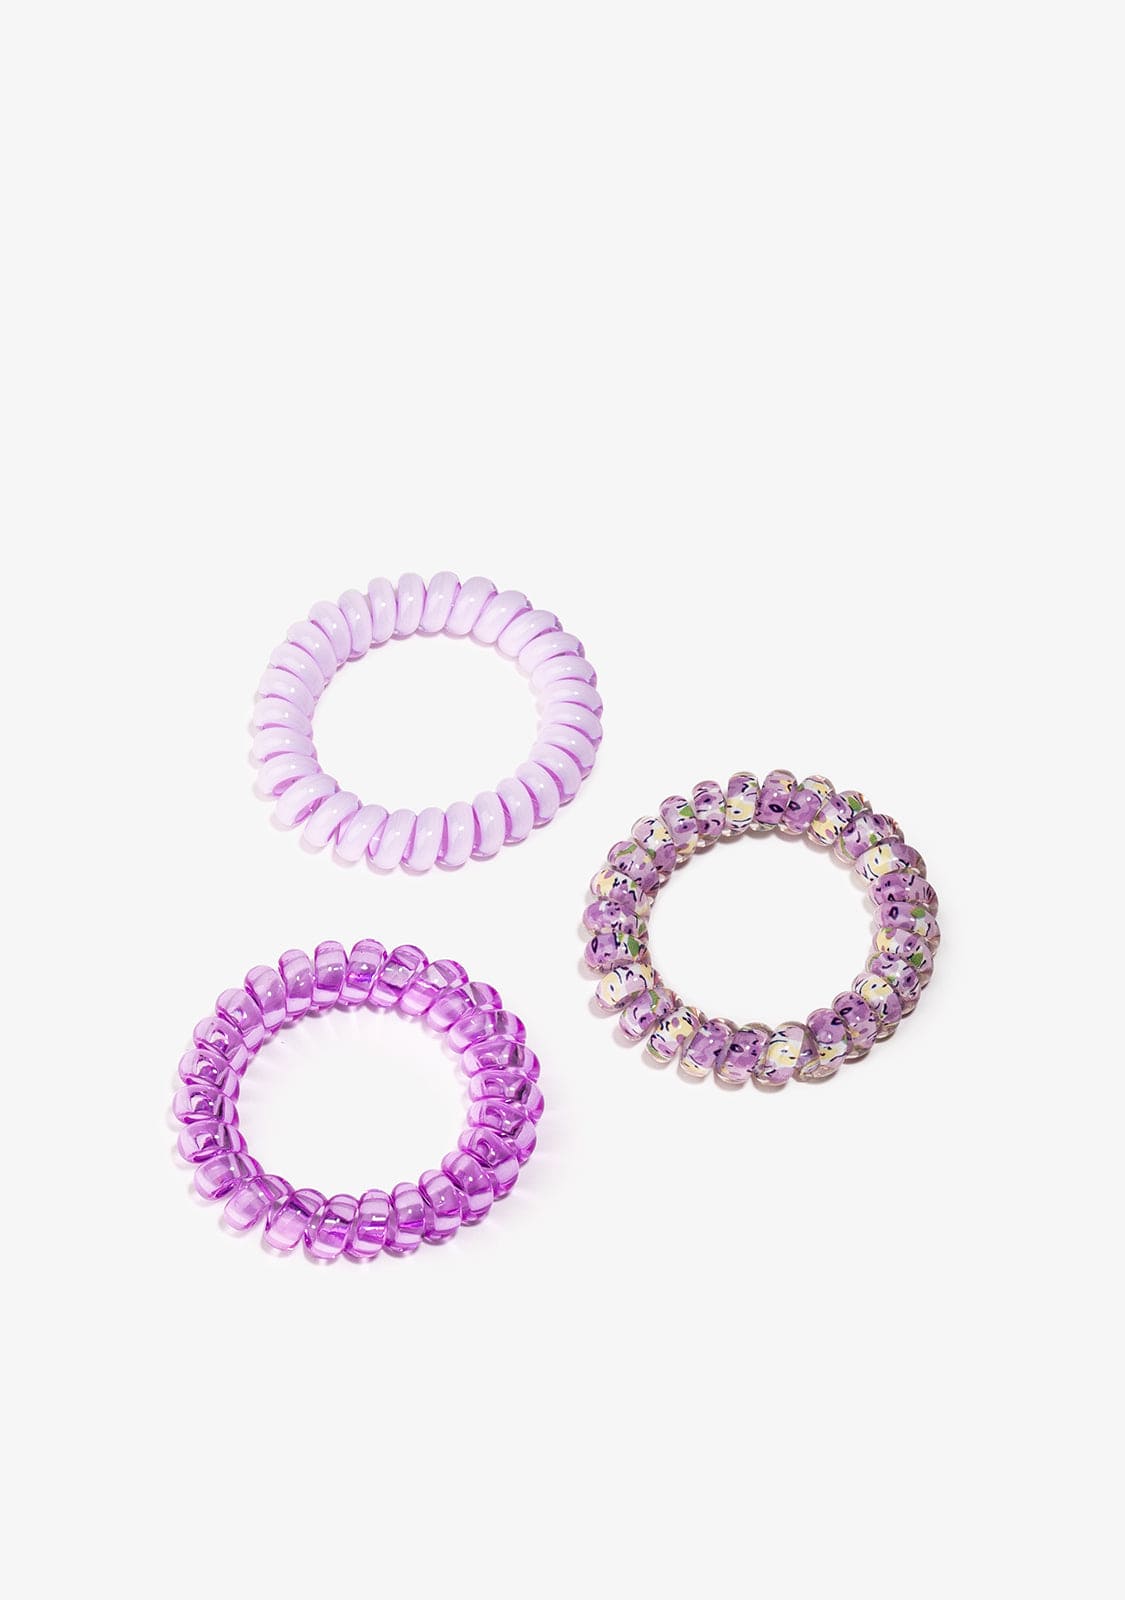 CONGUITOS TEXTIL Accessories Lavender Spiral Scrunchies Set